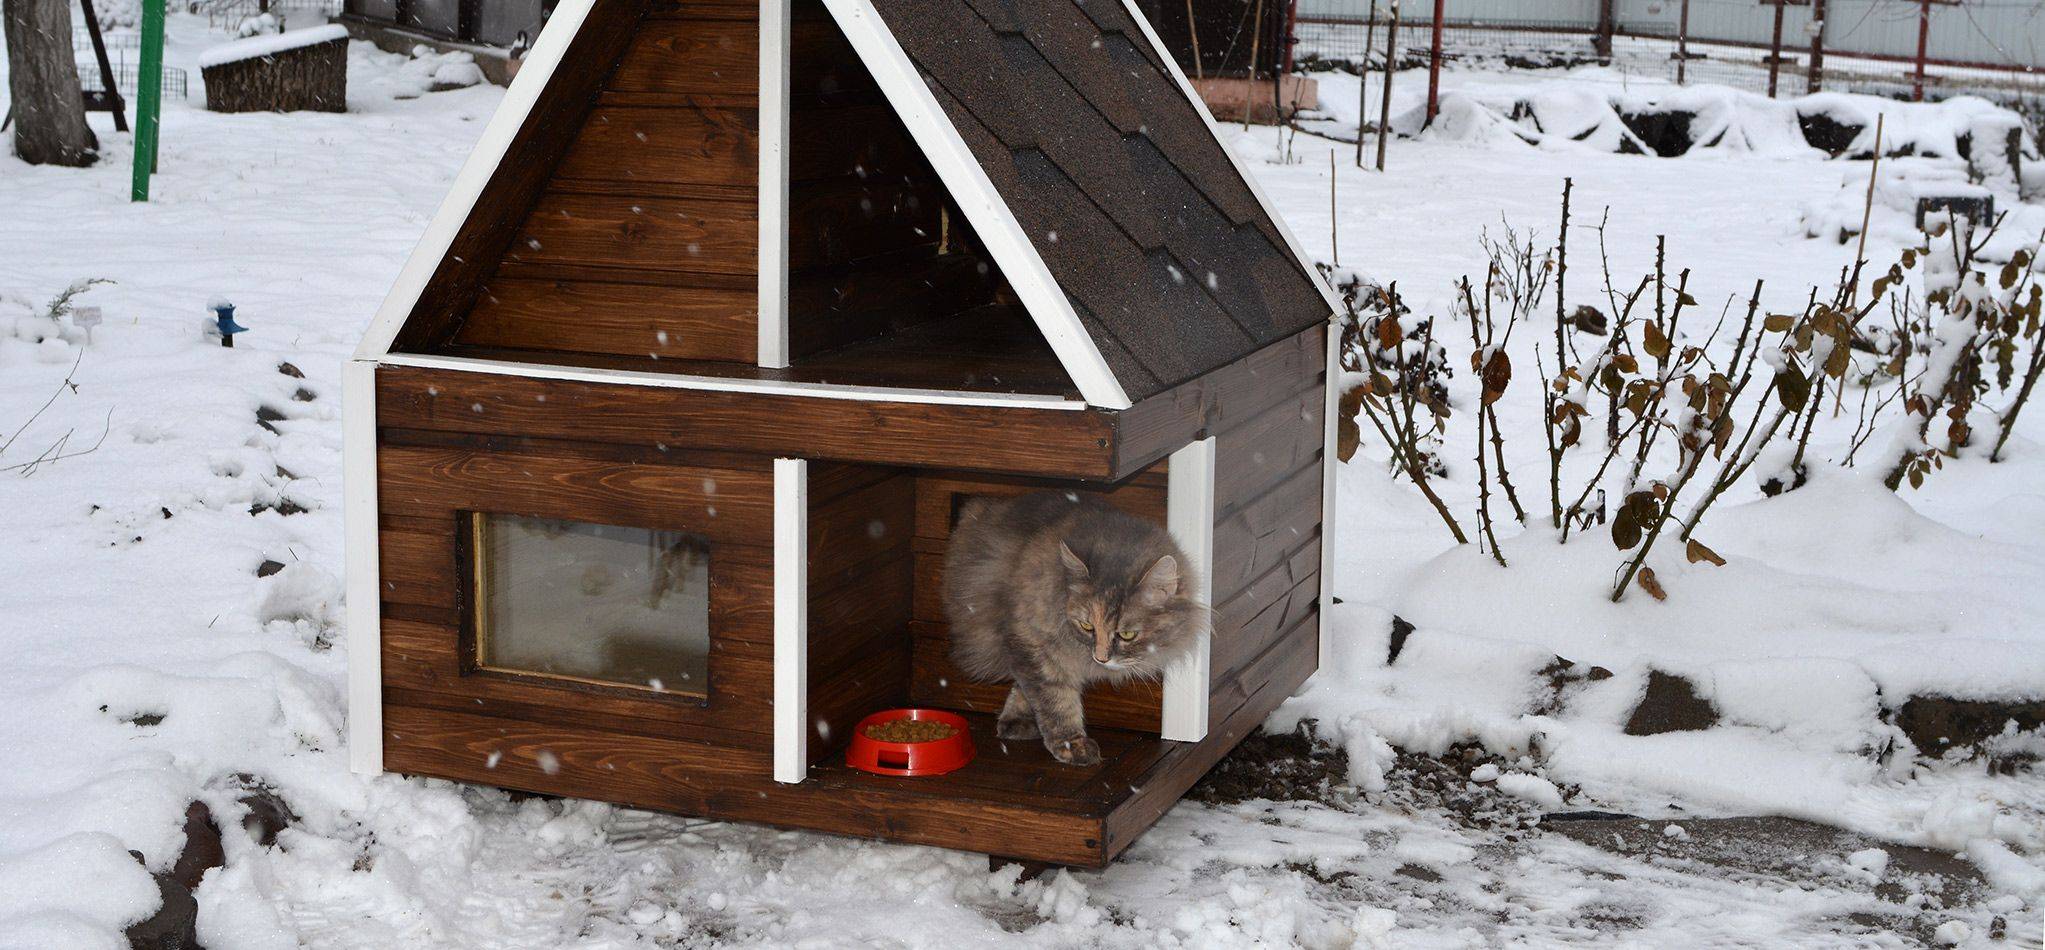 ✅ теплый домик для кошки своими руками: будка для кота - 1msk.su